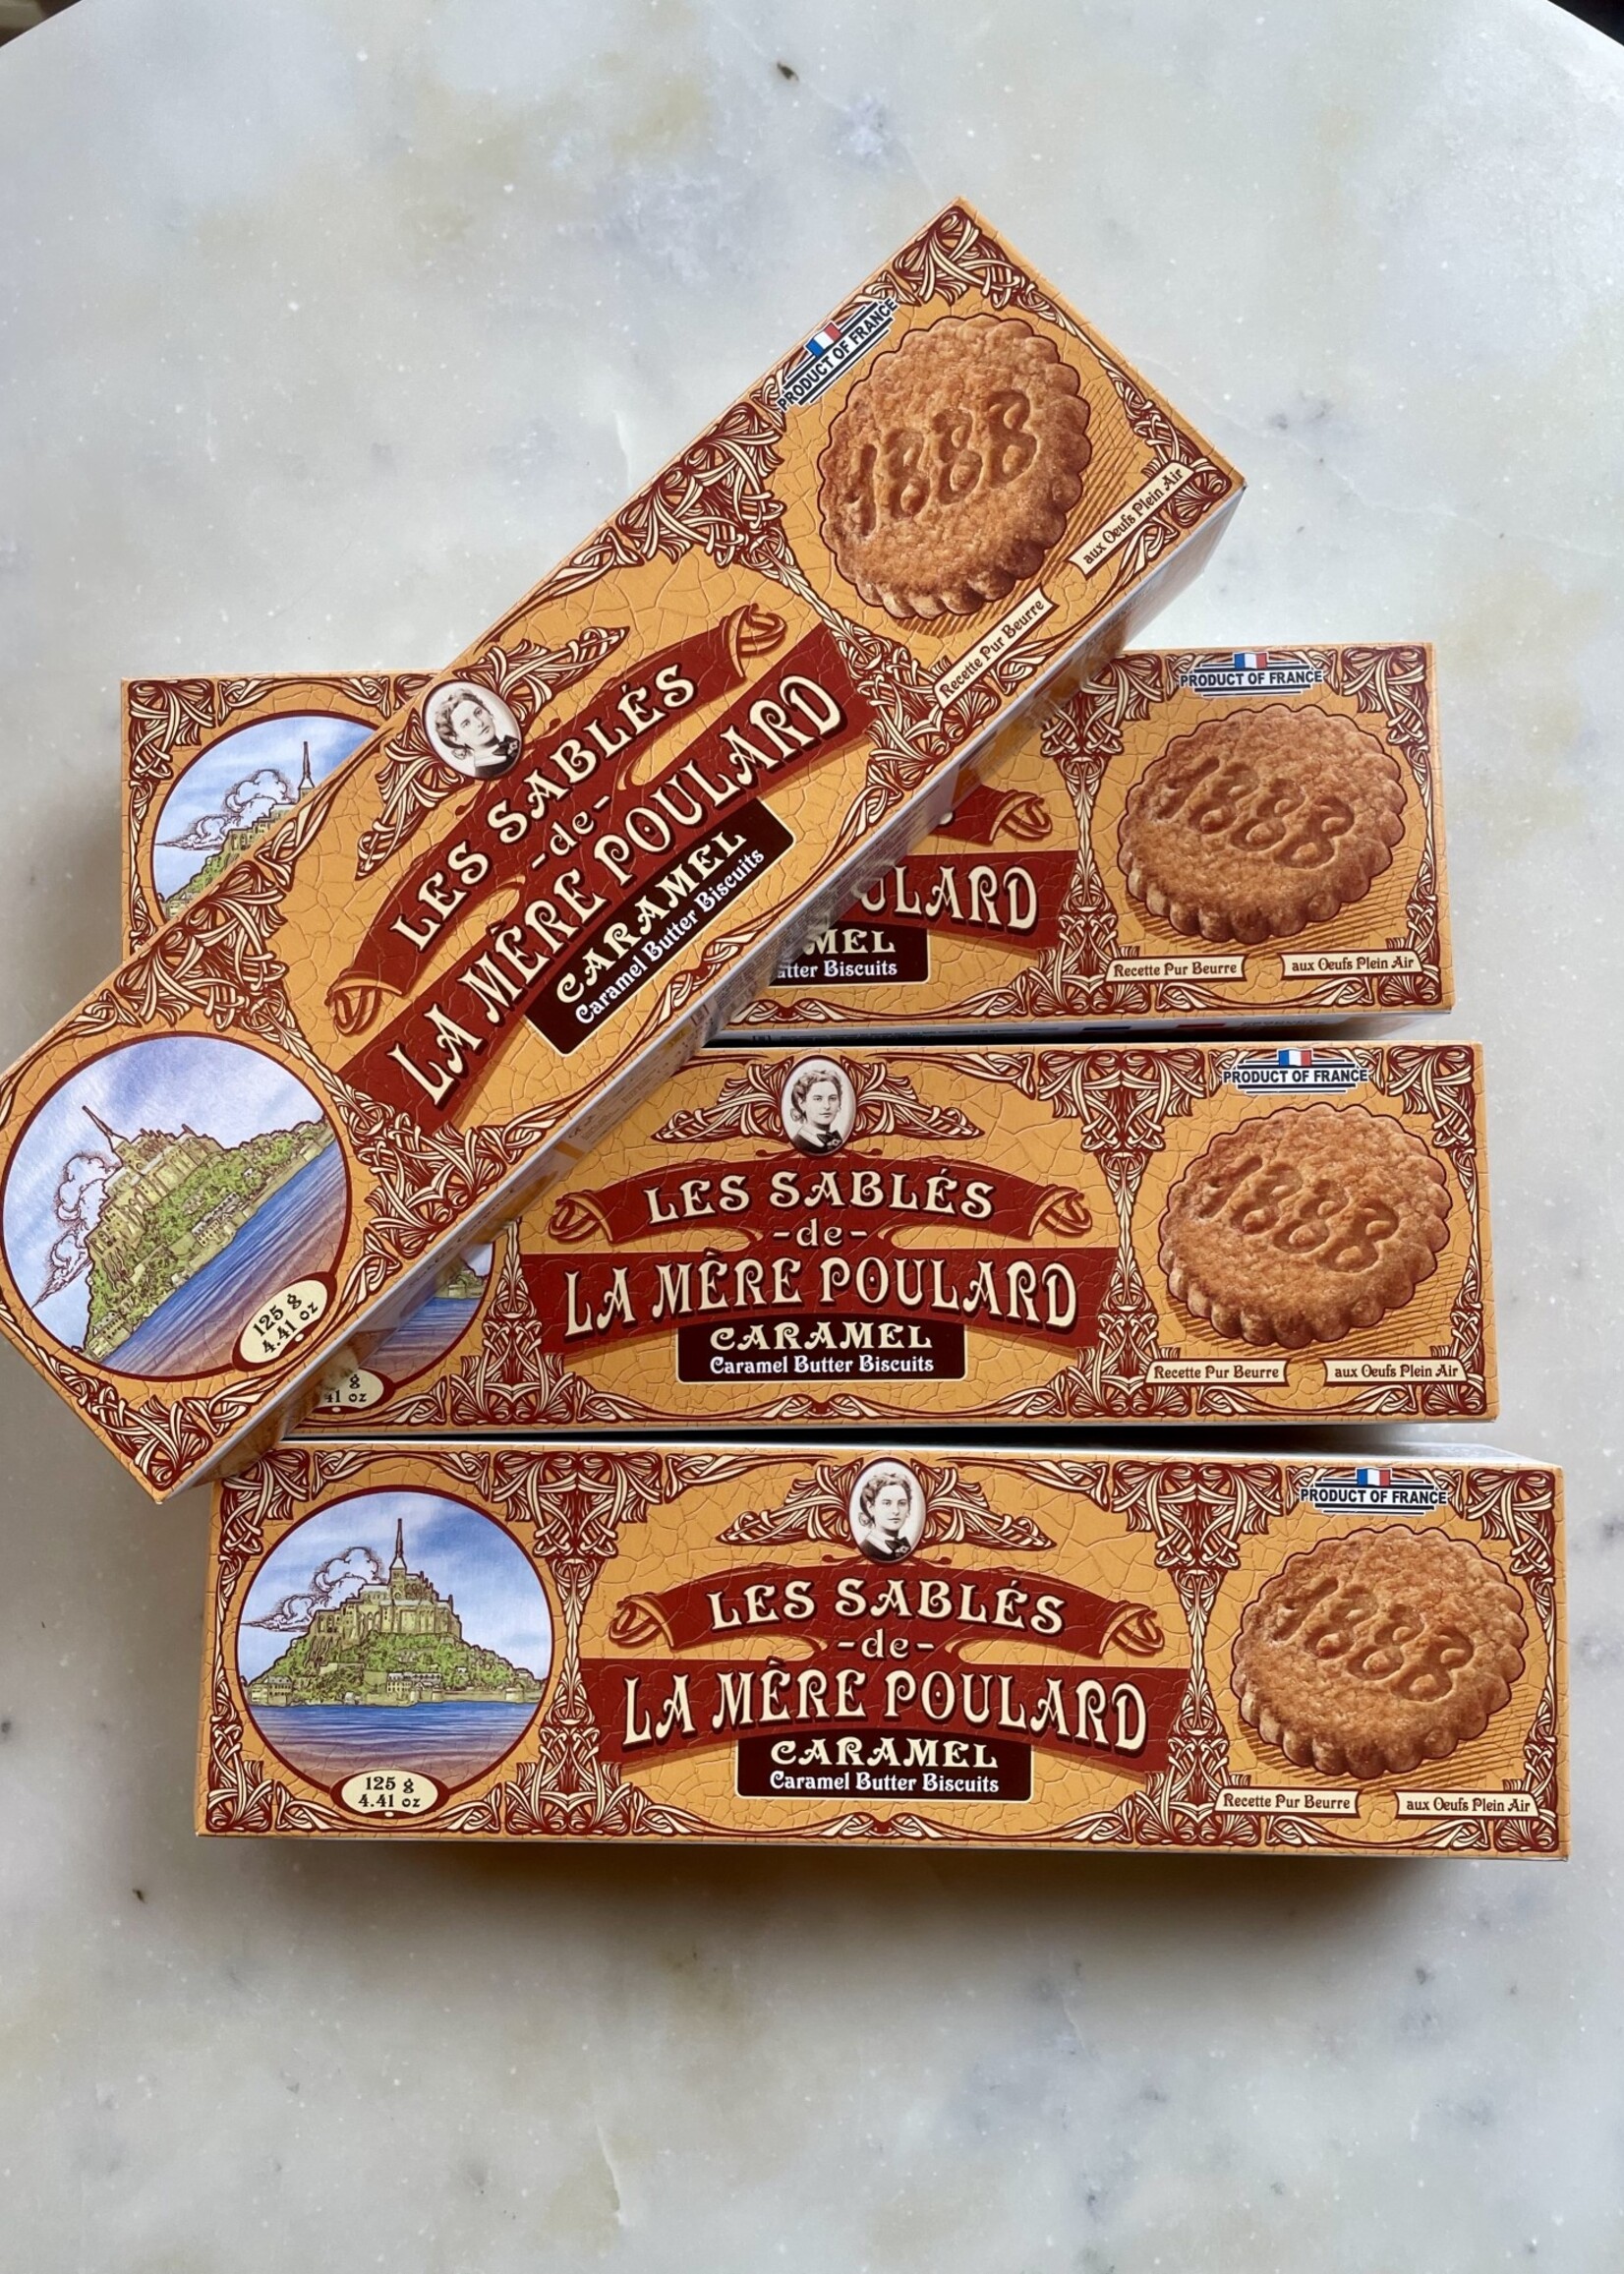 La Mere Poulard Caramel Sable Cookies 4.41oz (125g)